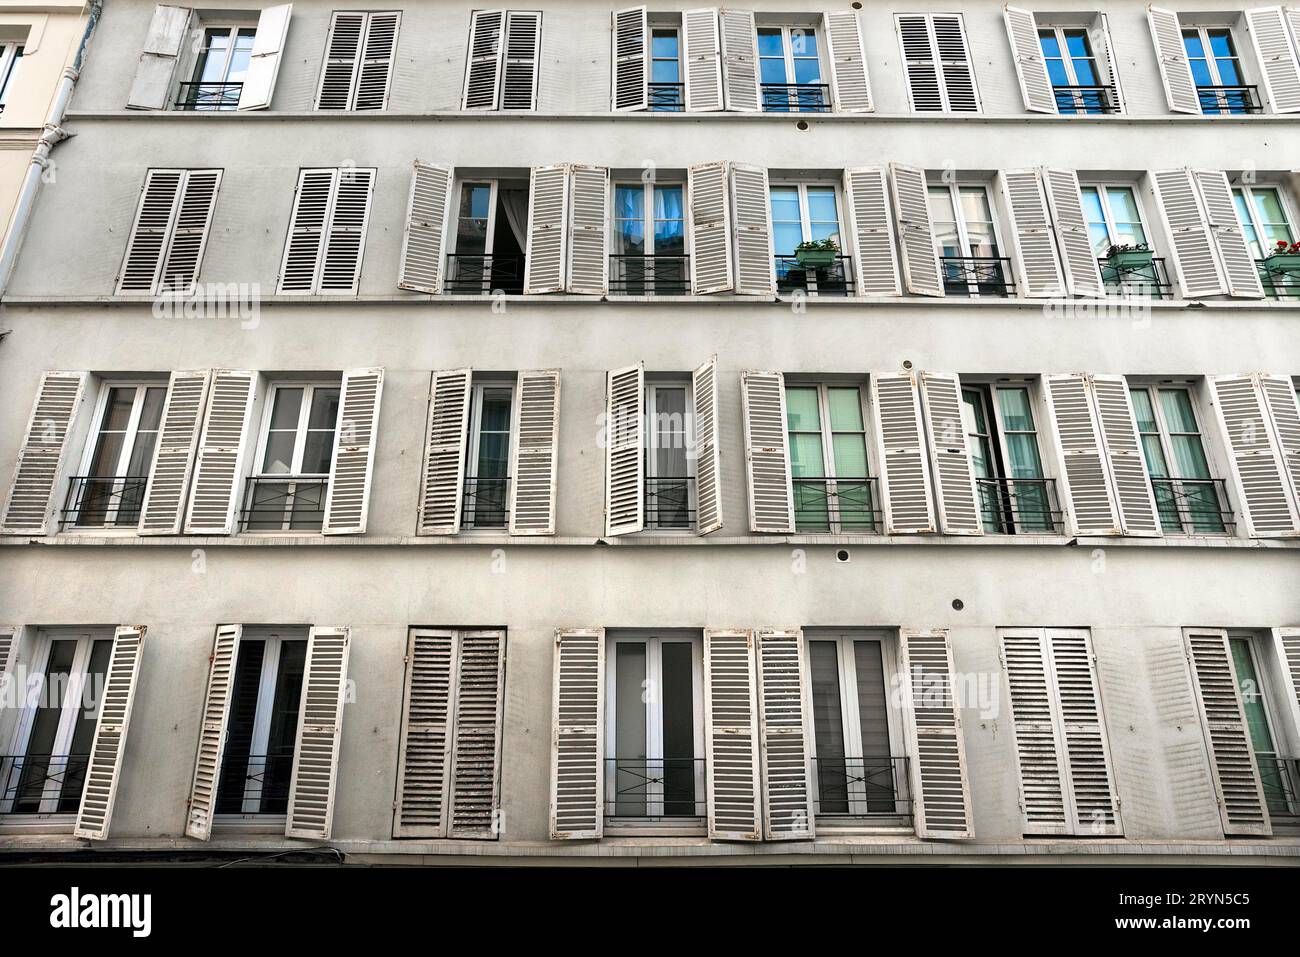 Location d'appartements dans une maison ancienne dans une rue latérale, rue d'Austerlitz, Paris, France Banque D'Images